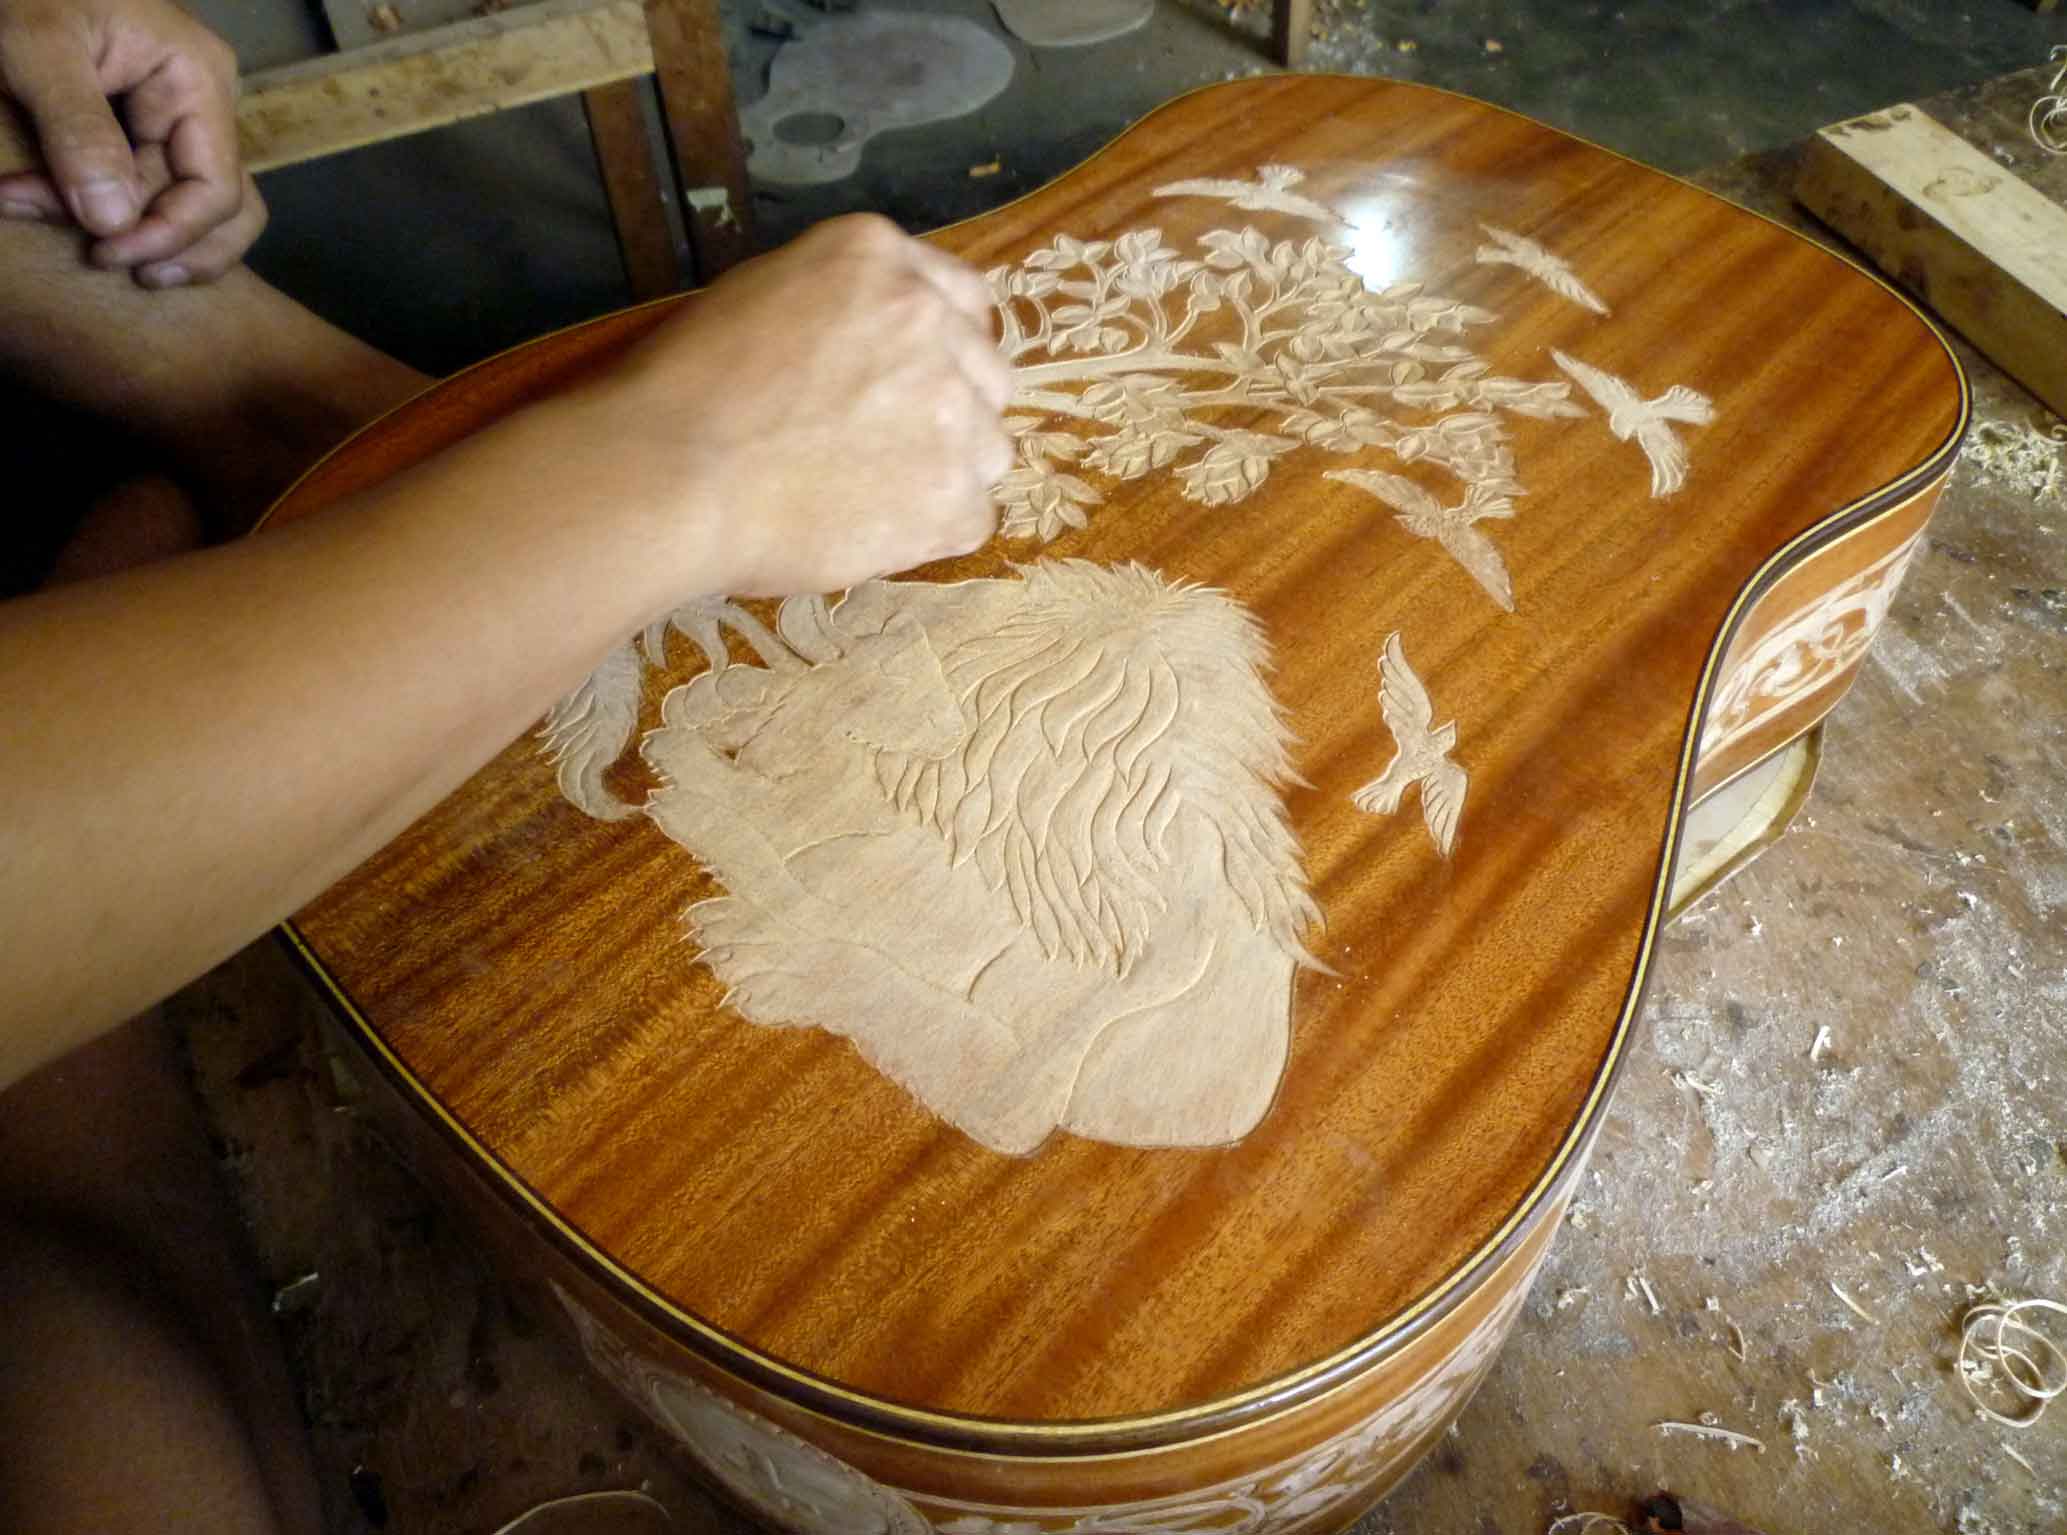 Carving the custom guitar